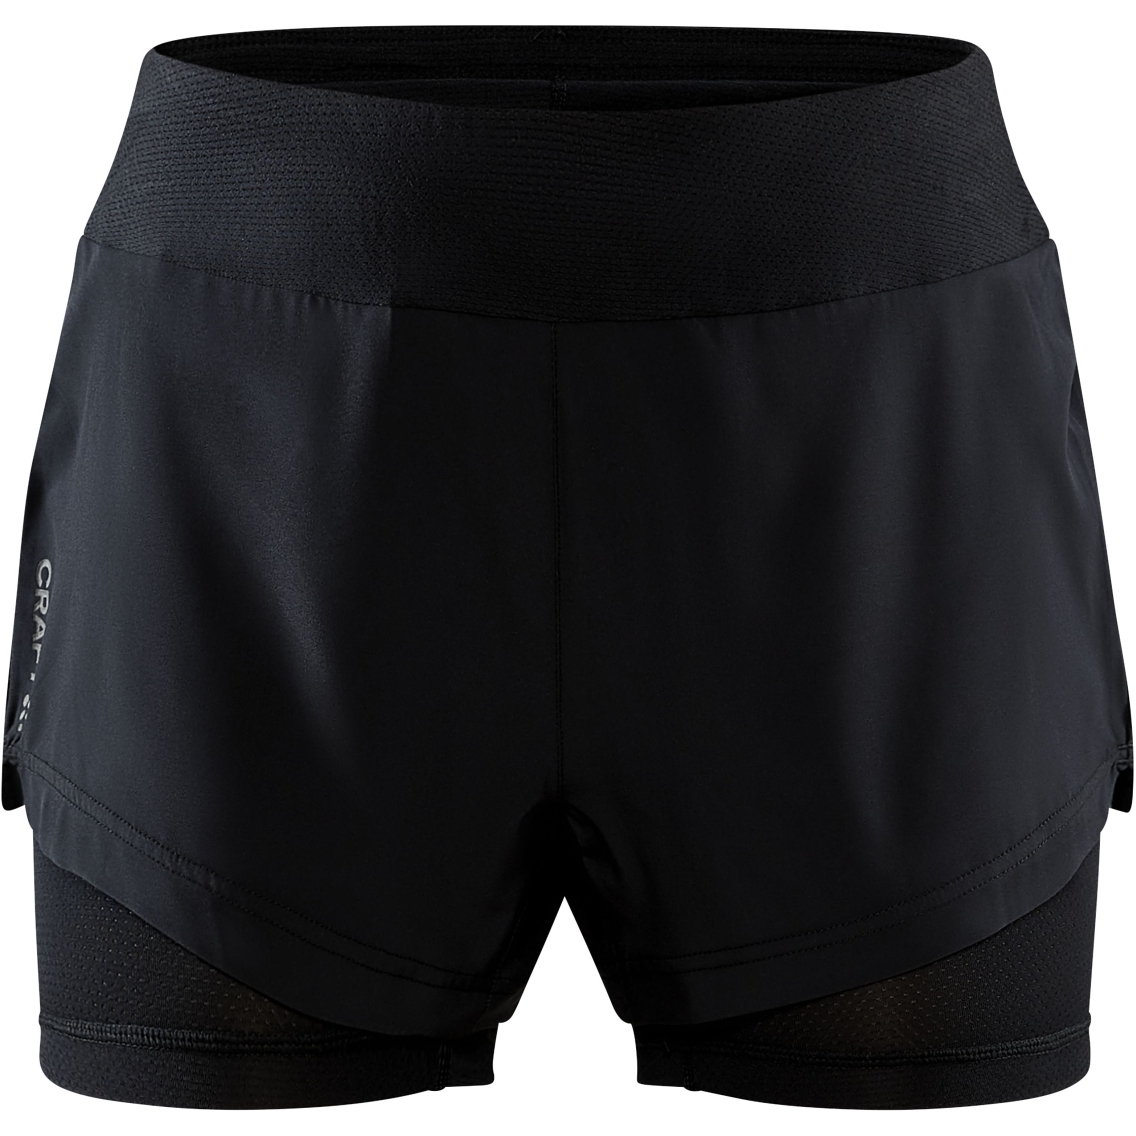 Produktbild von CRAFT ADV Essence Damen 2-In-1 Shorts - Schwarz